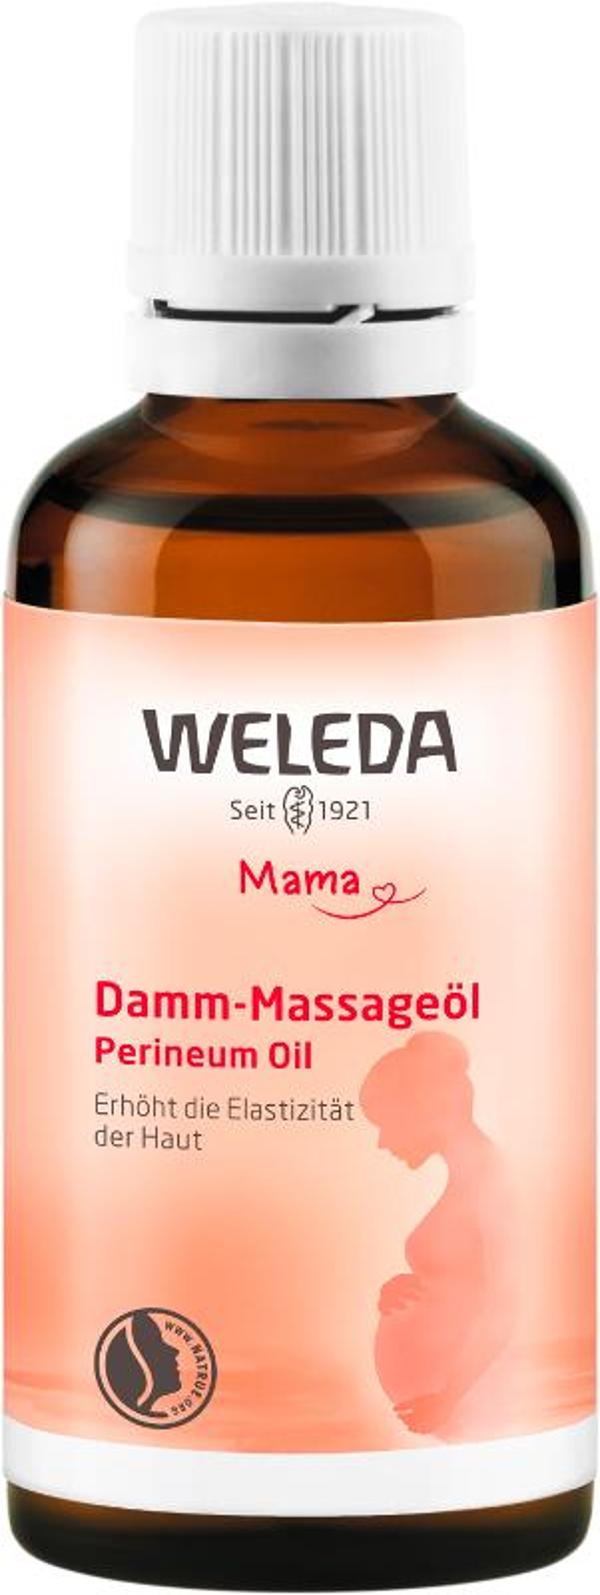 Produktfoto zu Damm-Massageöl 50 ml Weleda